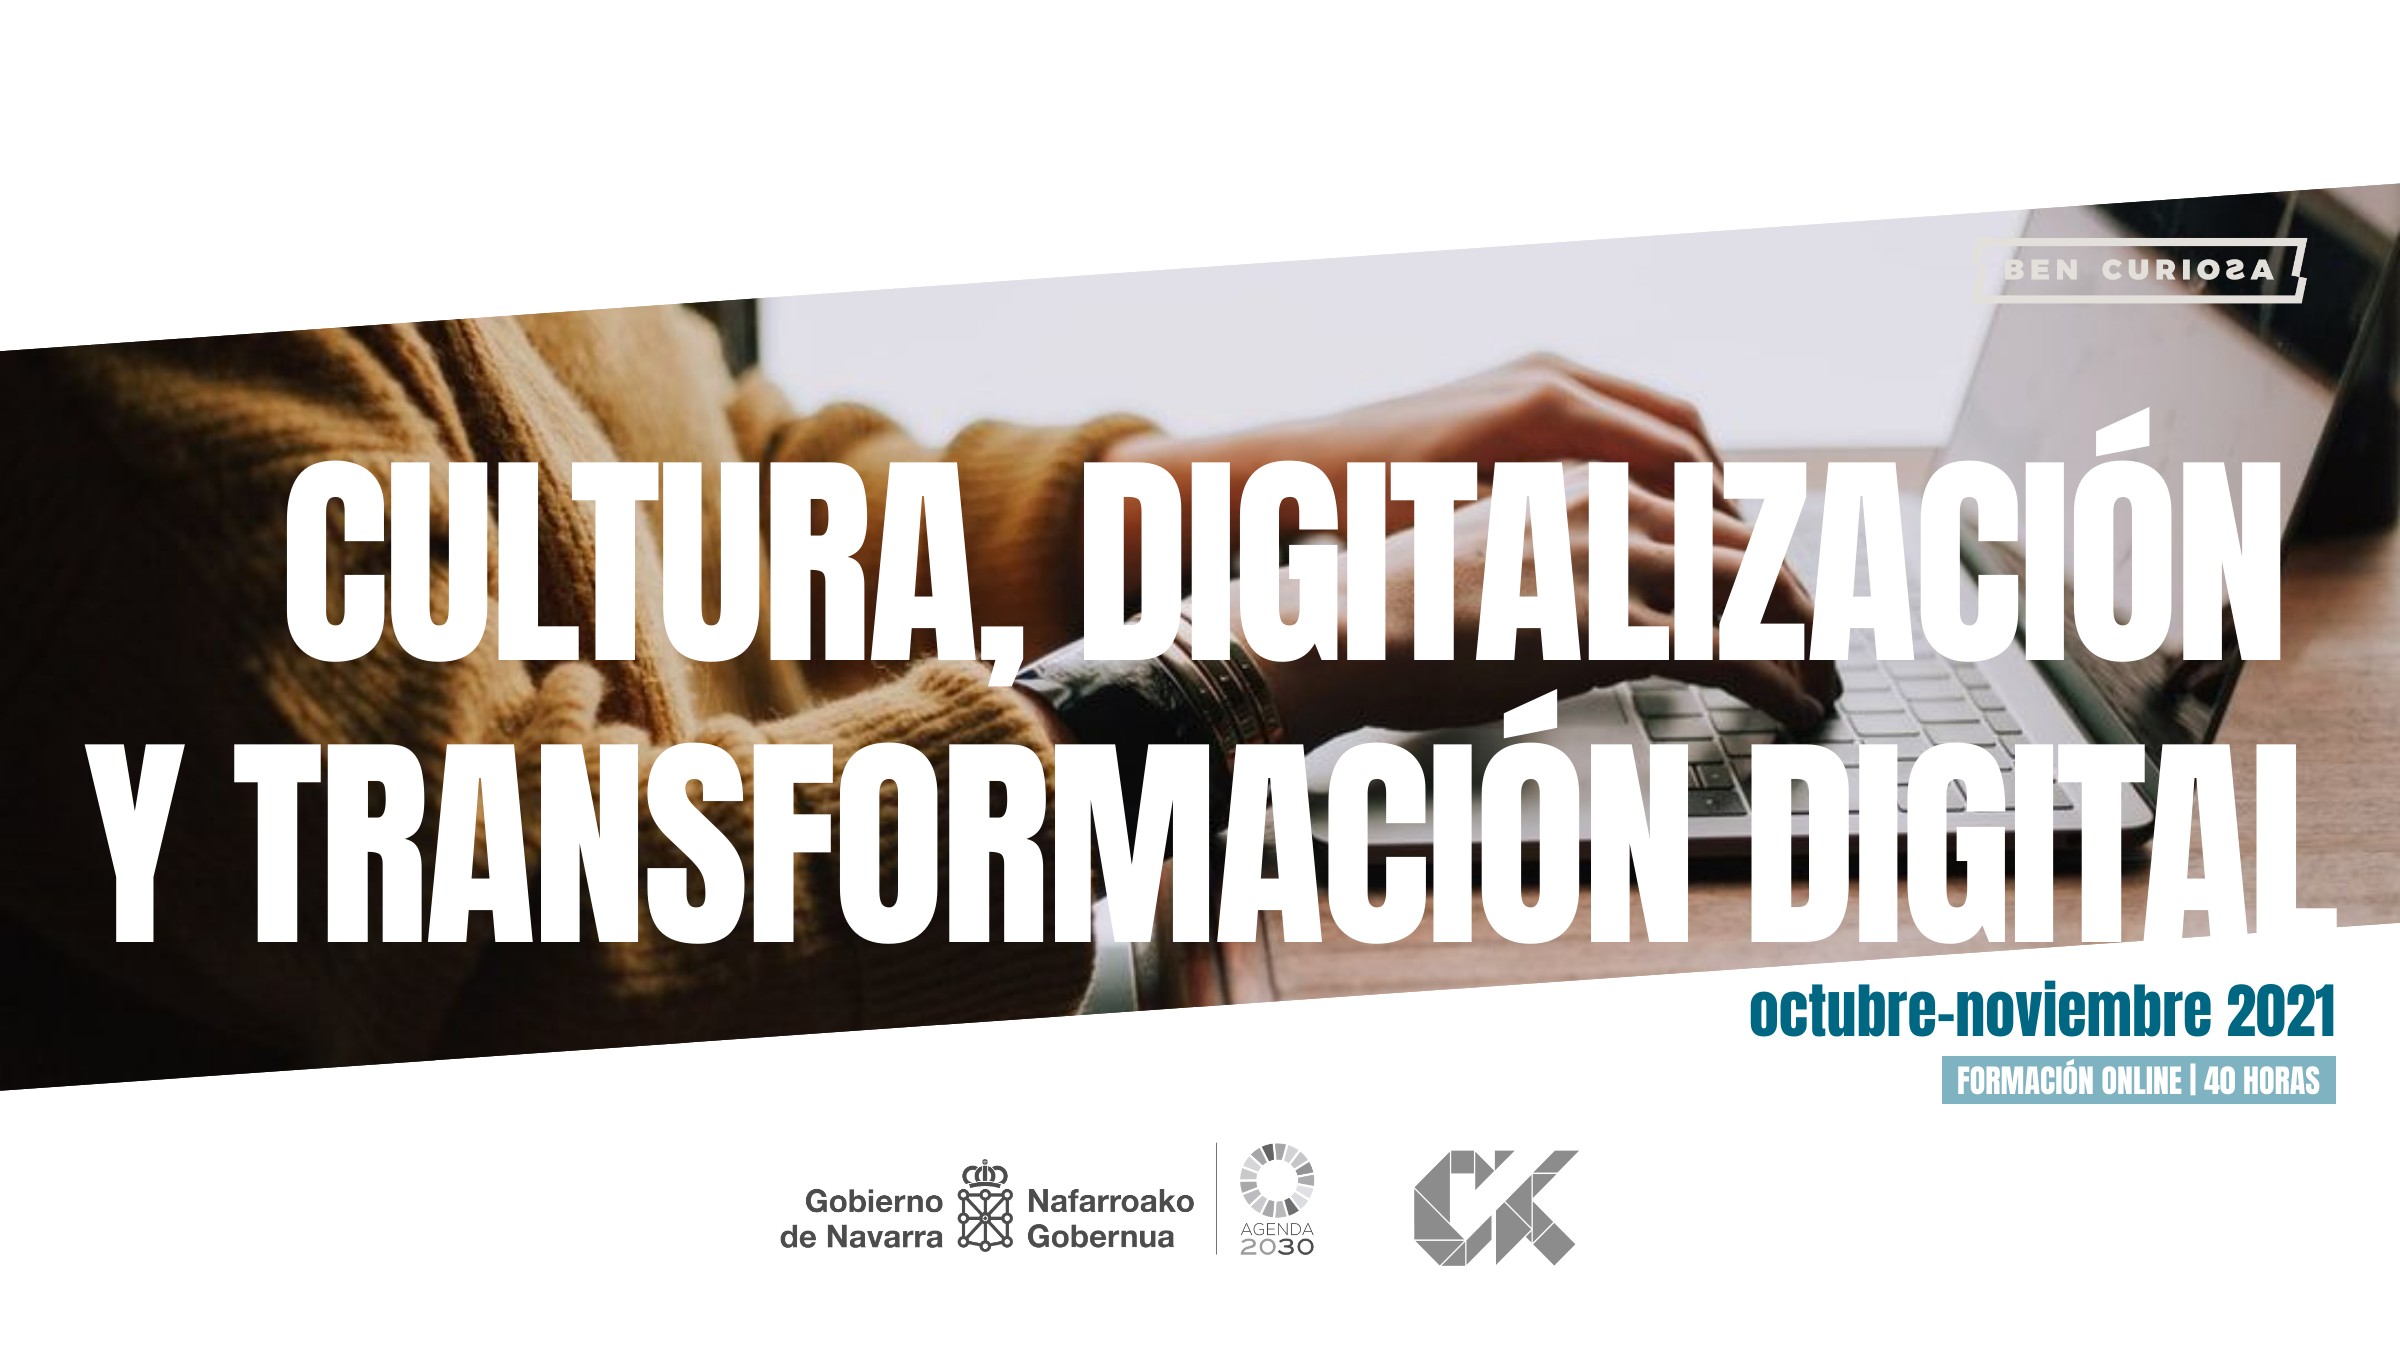 Cultura, digitalización y transformación digital